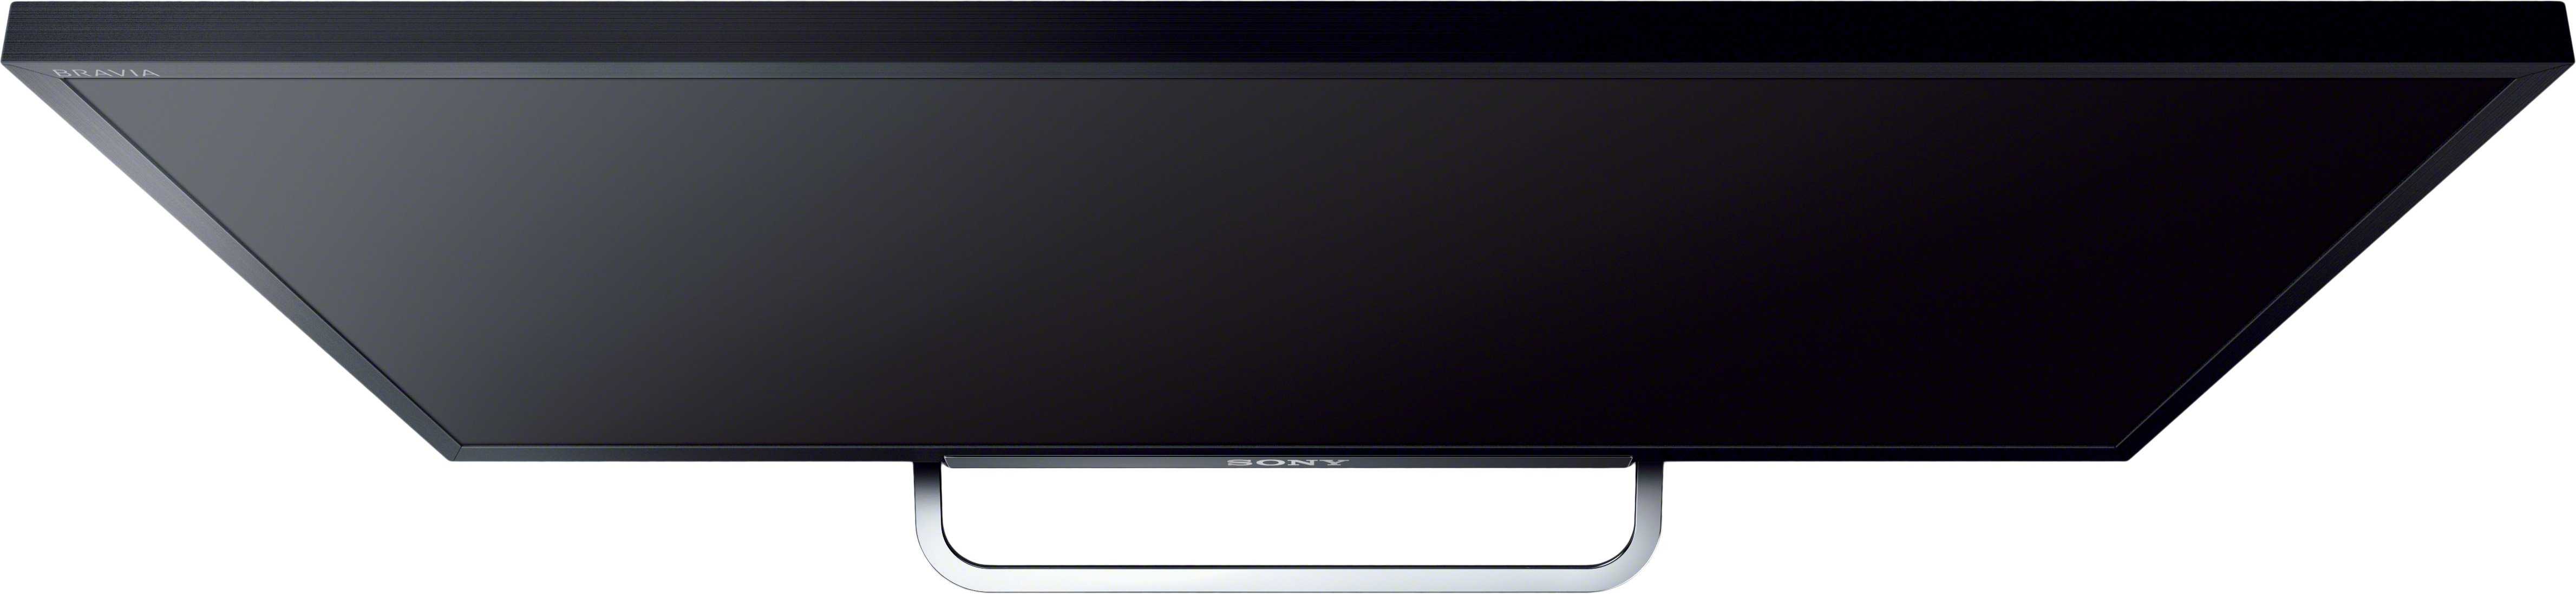 Телевизор sony kdl24w605a white купить за 23990 руб в нижнем новгороде, отзывы, видео обзоры и характеристики